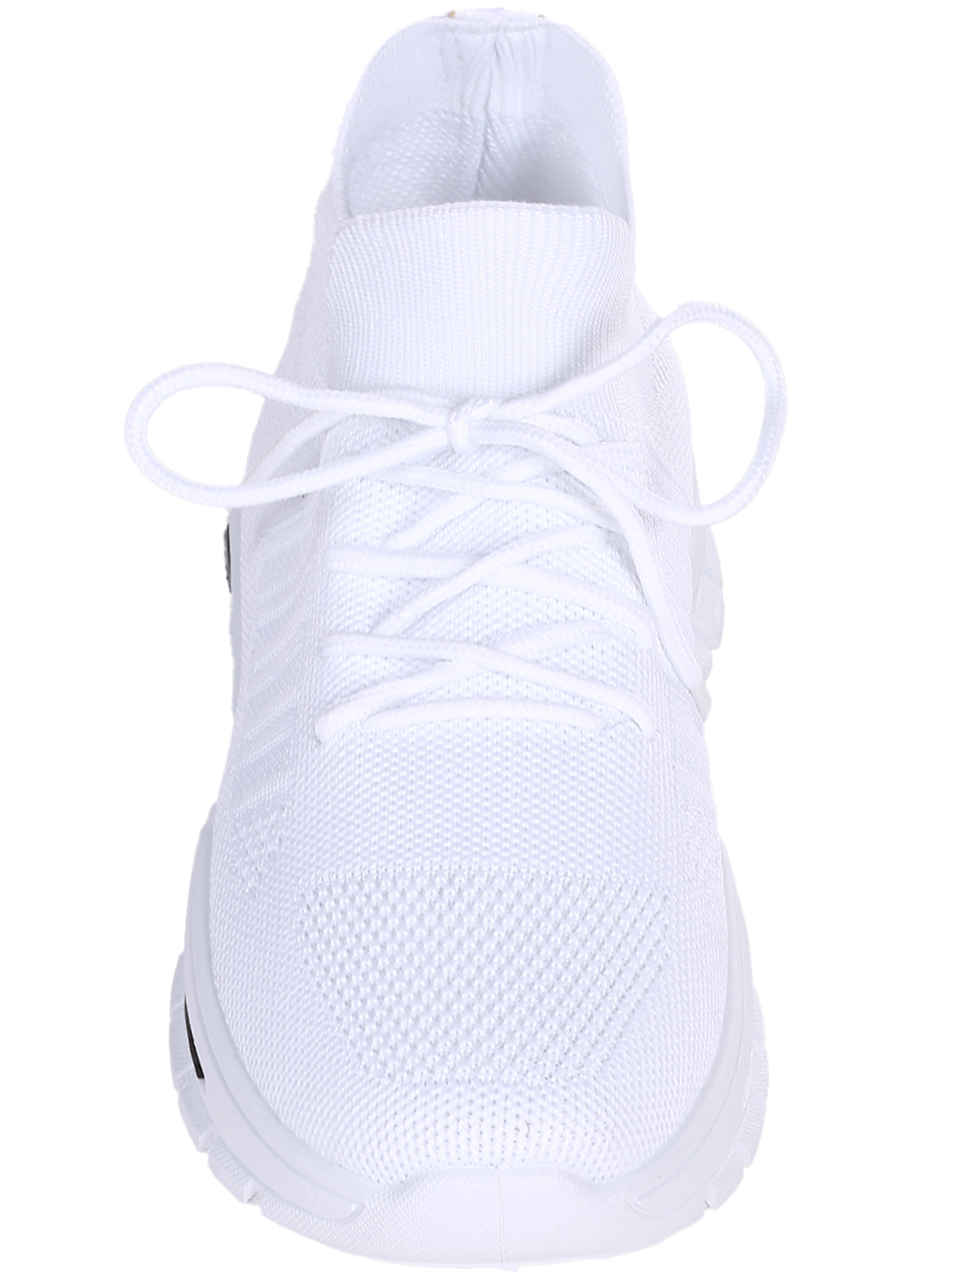 Ежедневни мъжки комфортни обувки в бяло 7U-23215 white